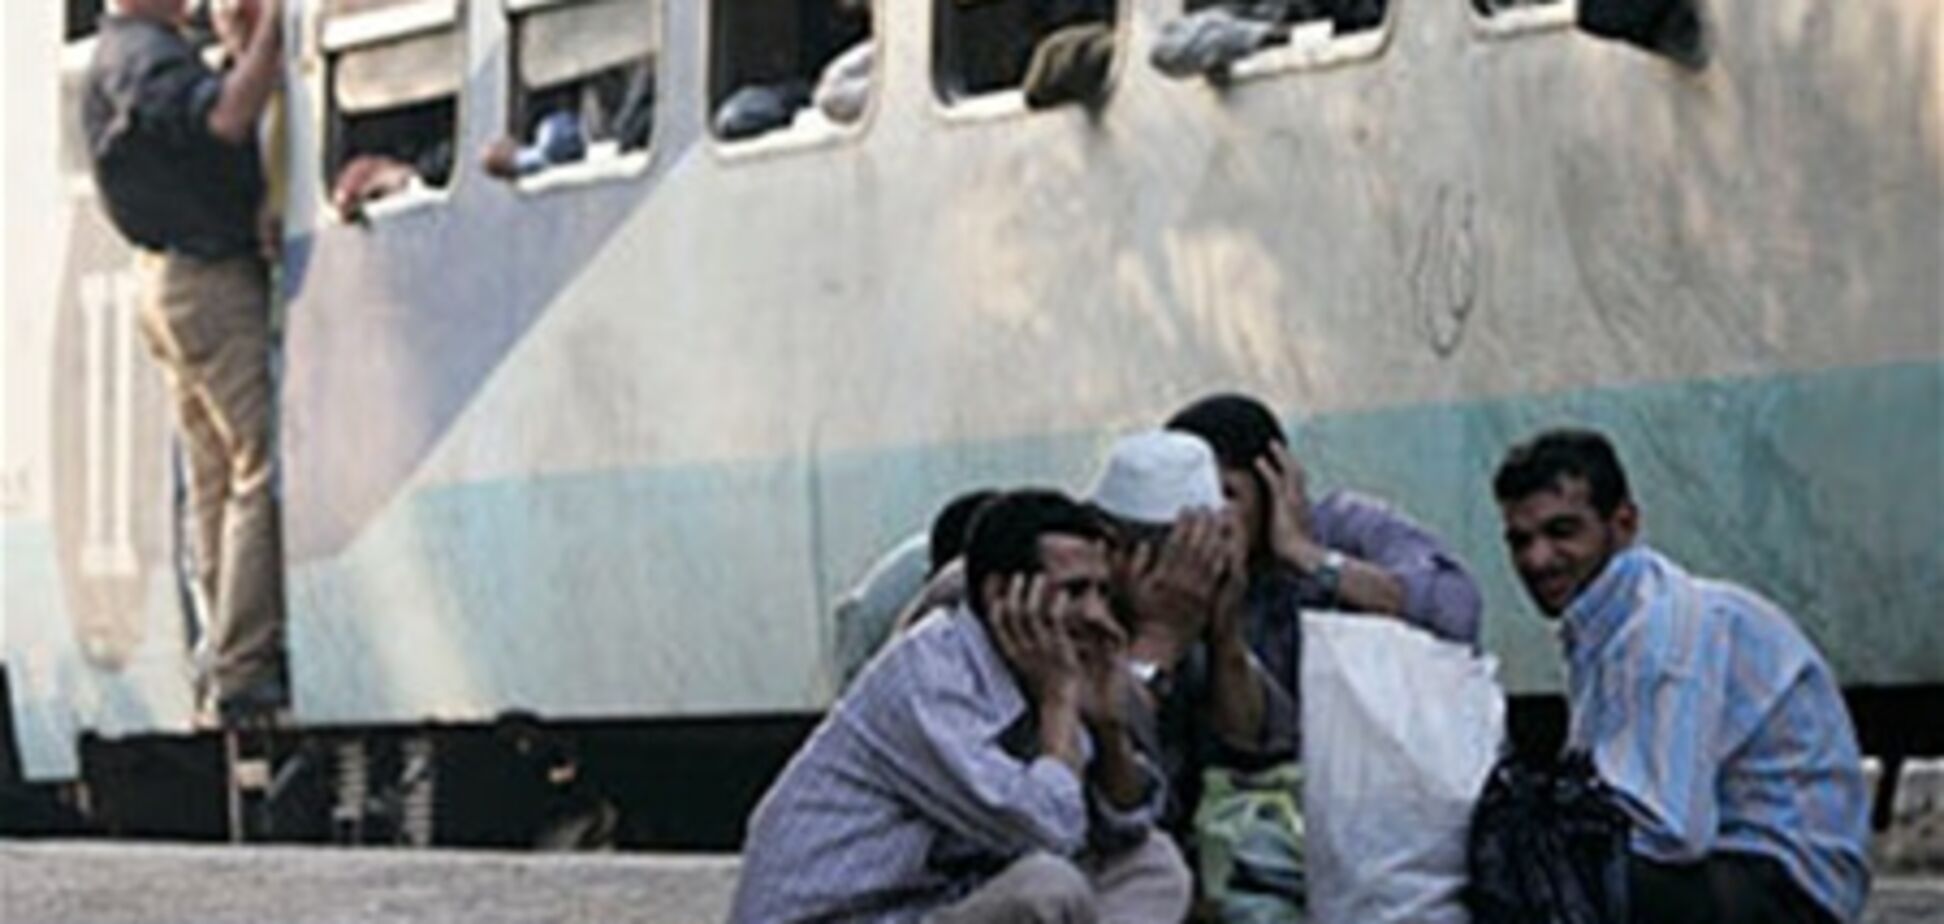 У Єгипті зійшов з рейок і загорівся потяг: 4 загиблих, 70 поранених